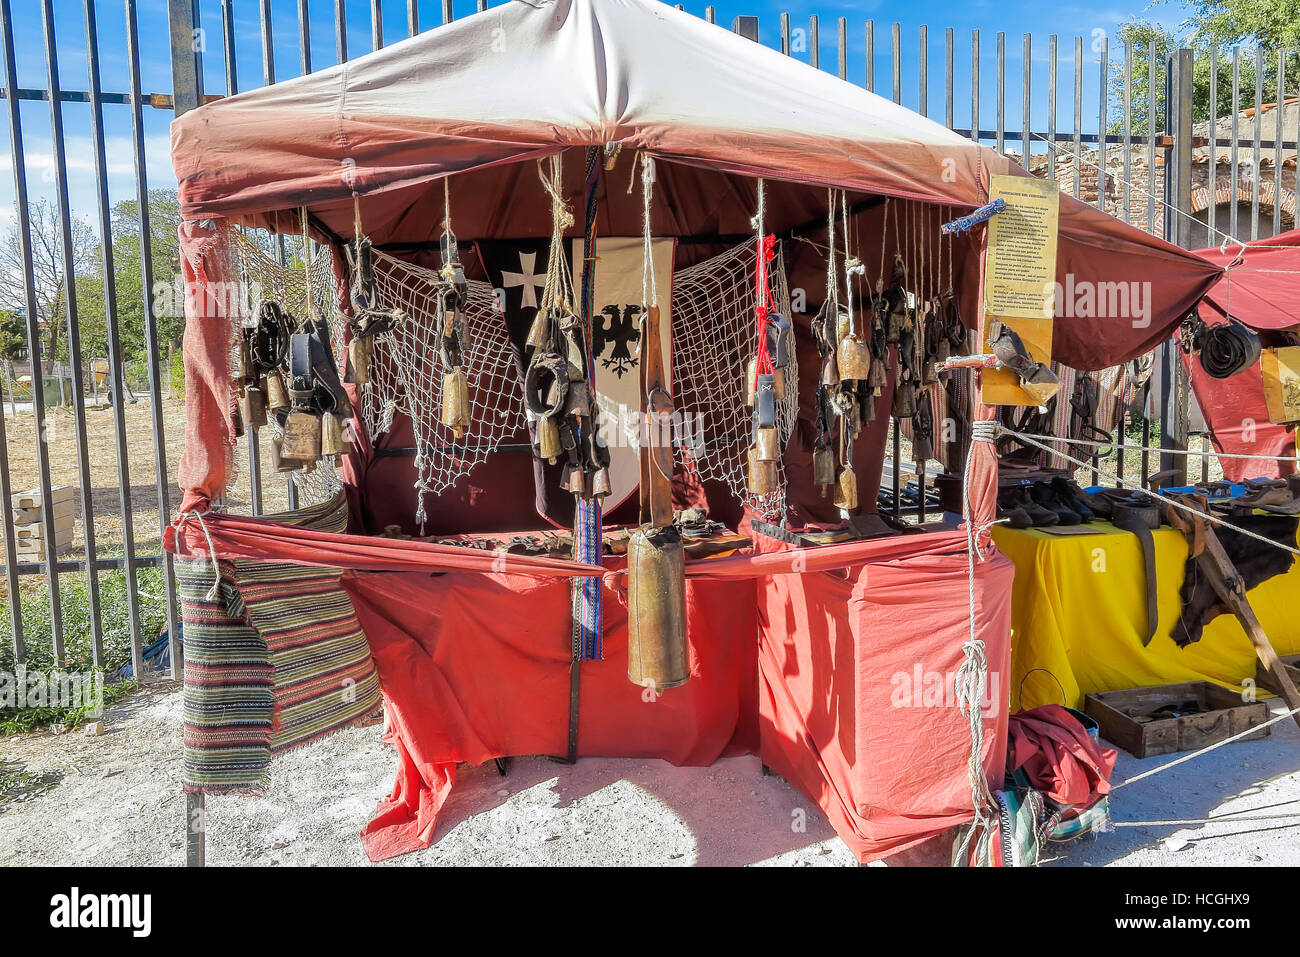 Une scène avec une boutique de cloches dans la reconstitution d'un marché médiéval. Le marché gratuitement et est situé sur un lieu public Banque D'Images